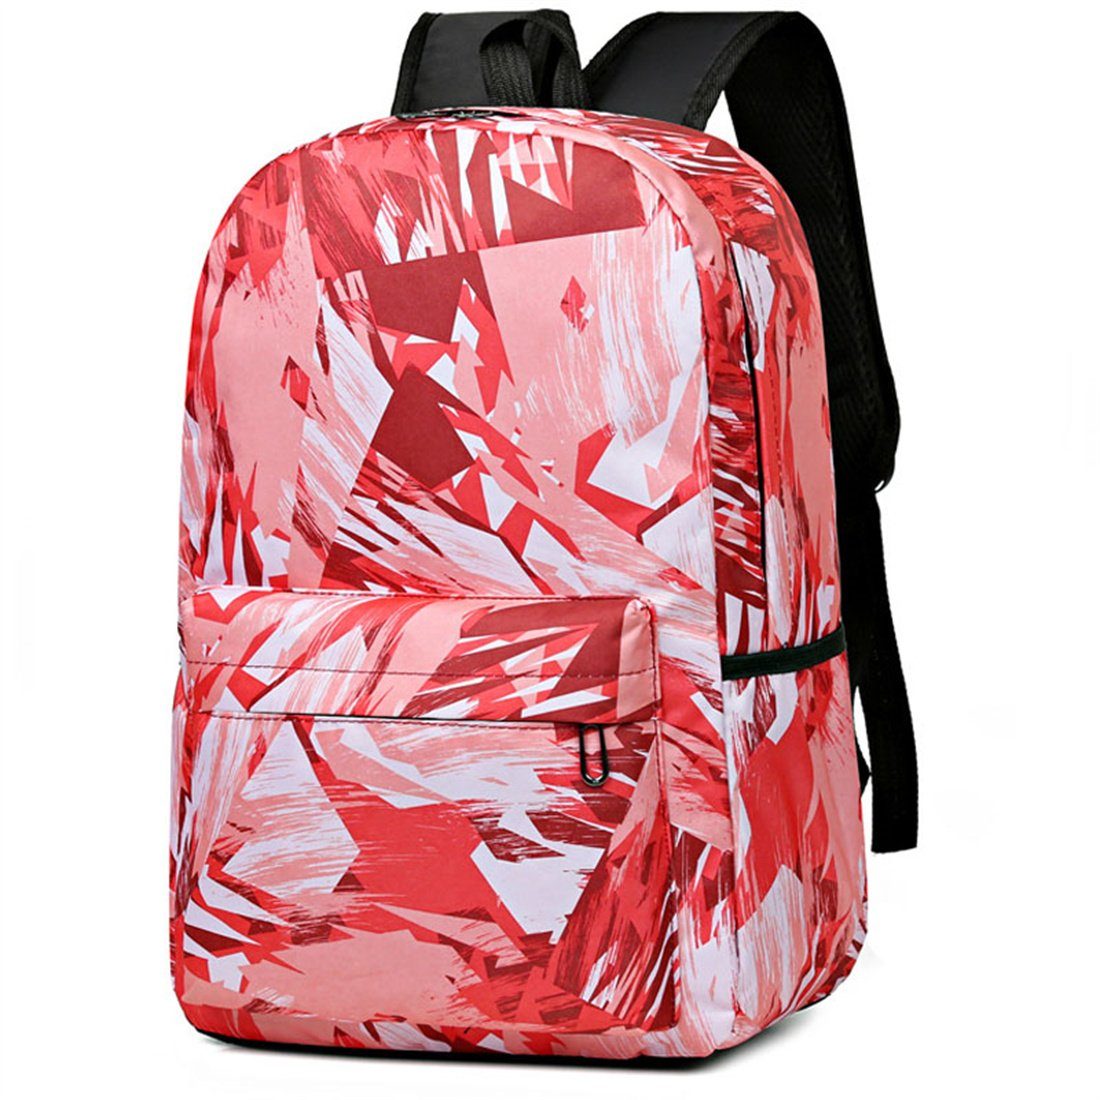 DÖRÖY Schulranzen Große Kapazität Schultasche für Studenten,Schule Mode lässig Rucksäcke Rot